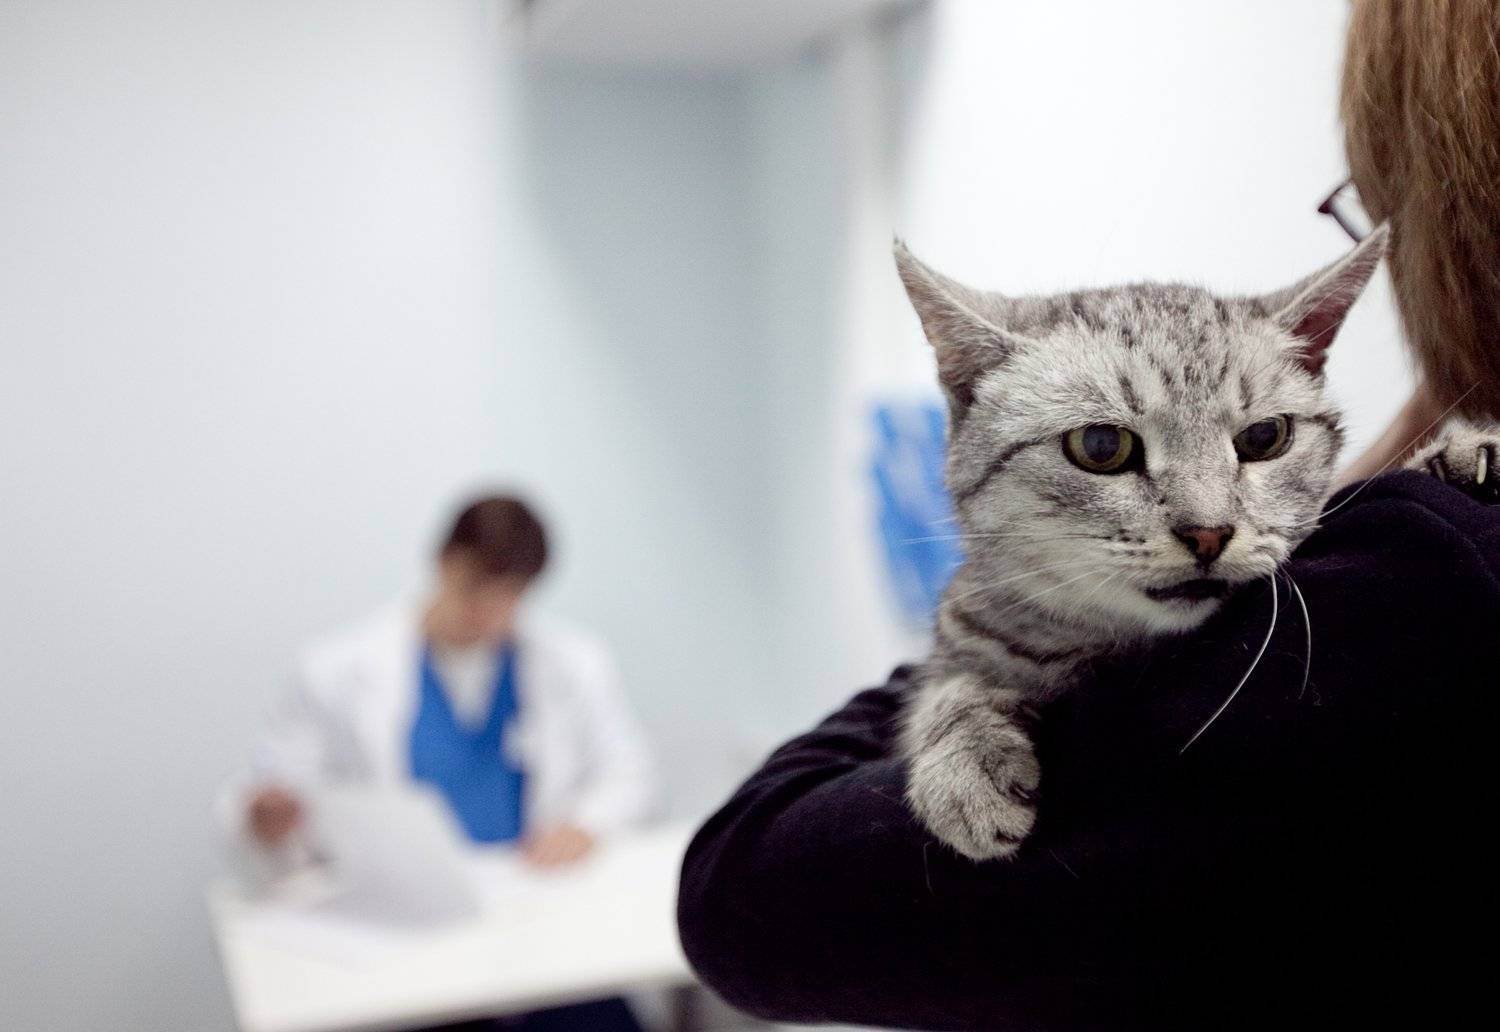 Анестезия у кошек при кастрации стерилизации и других хирургических вмешательств. как оценить риск развития осожнений? как снизить вероятность неблагоприятного исхода?